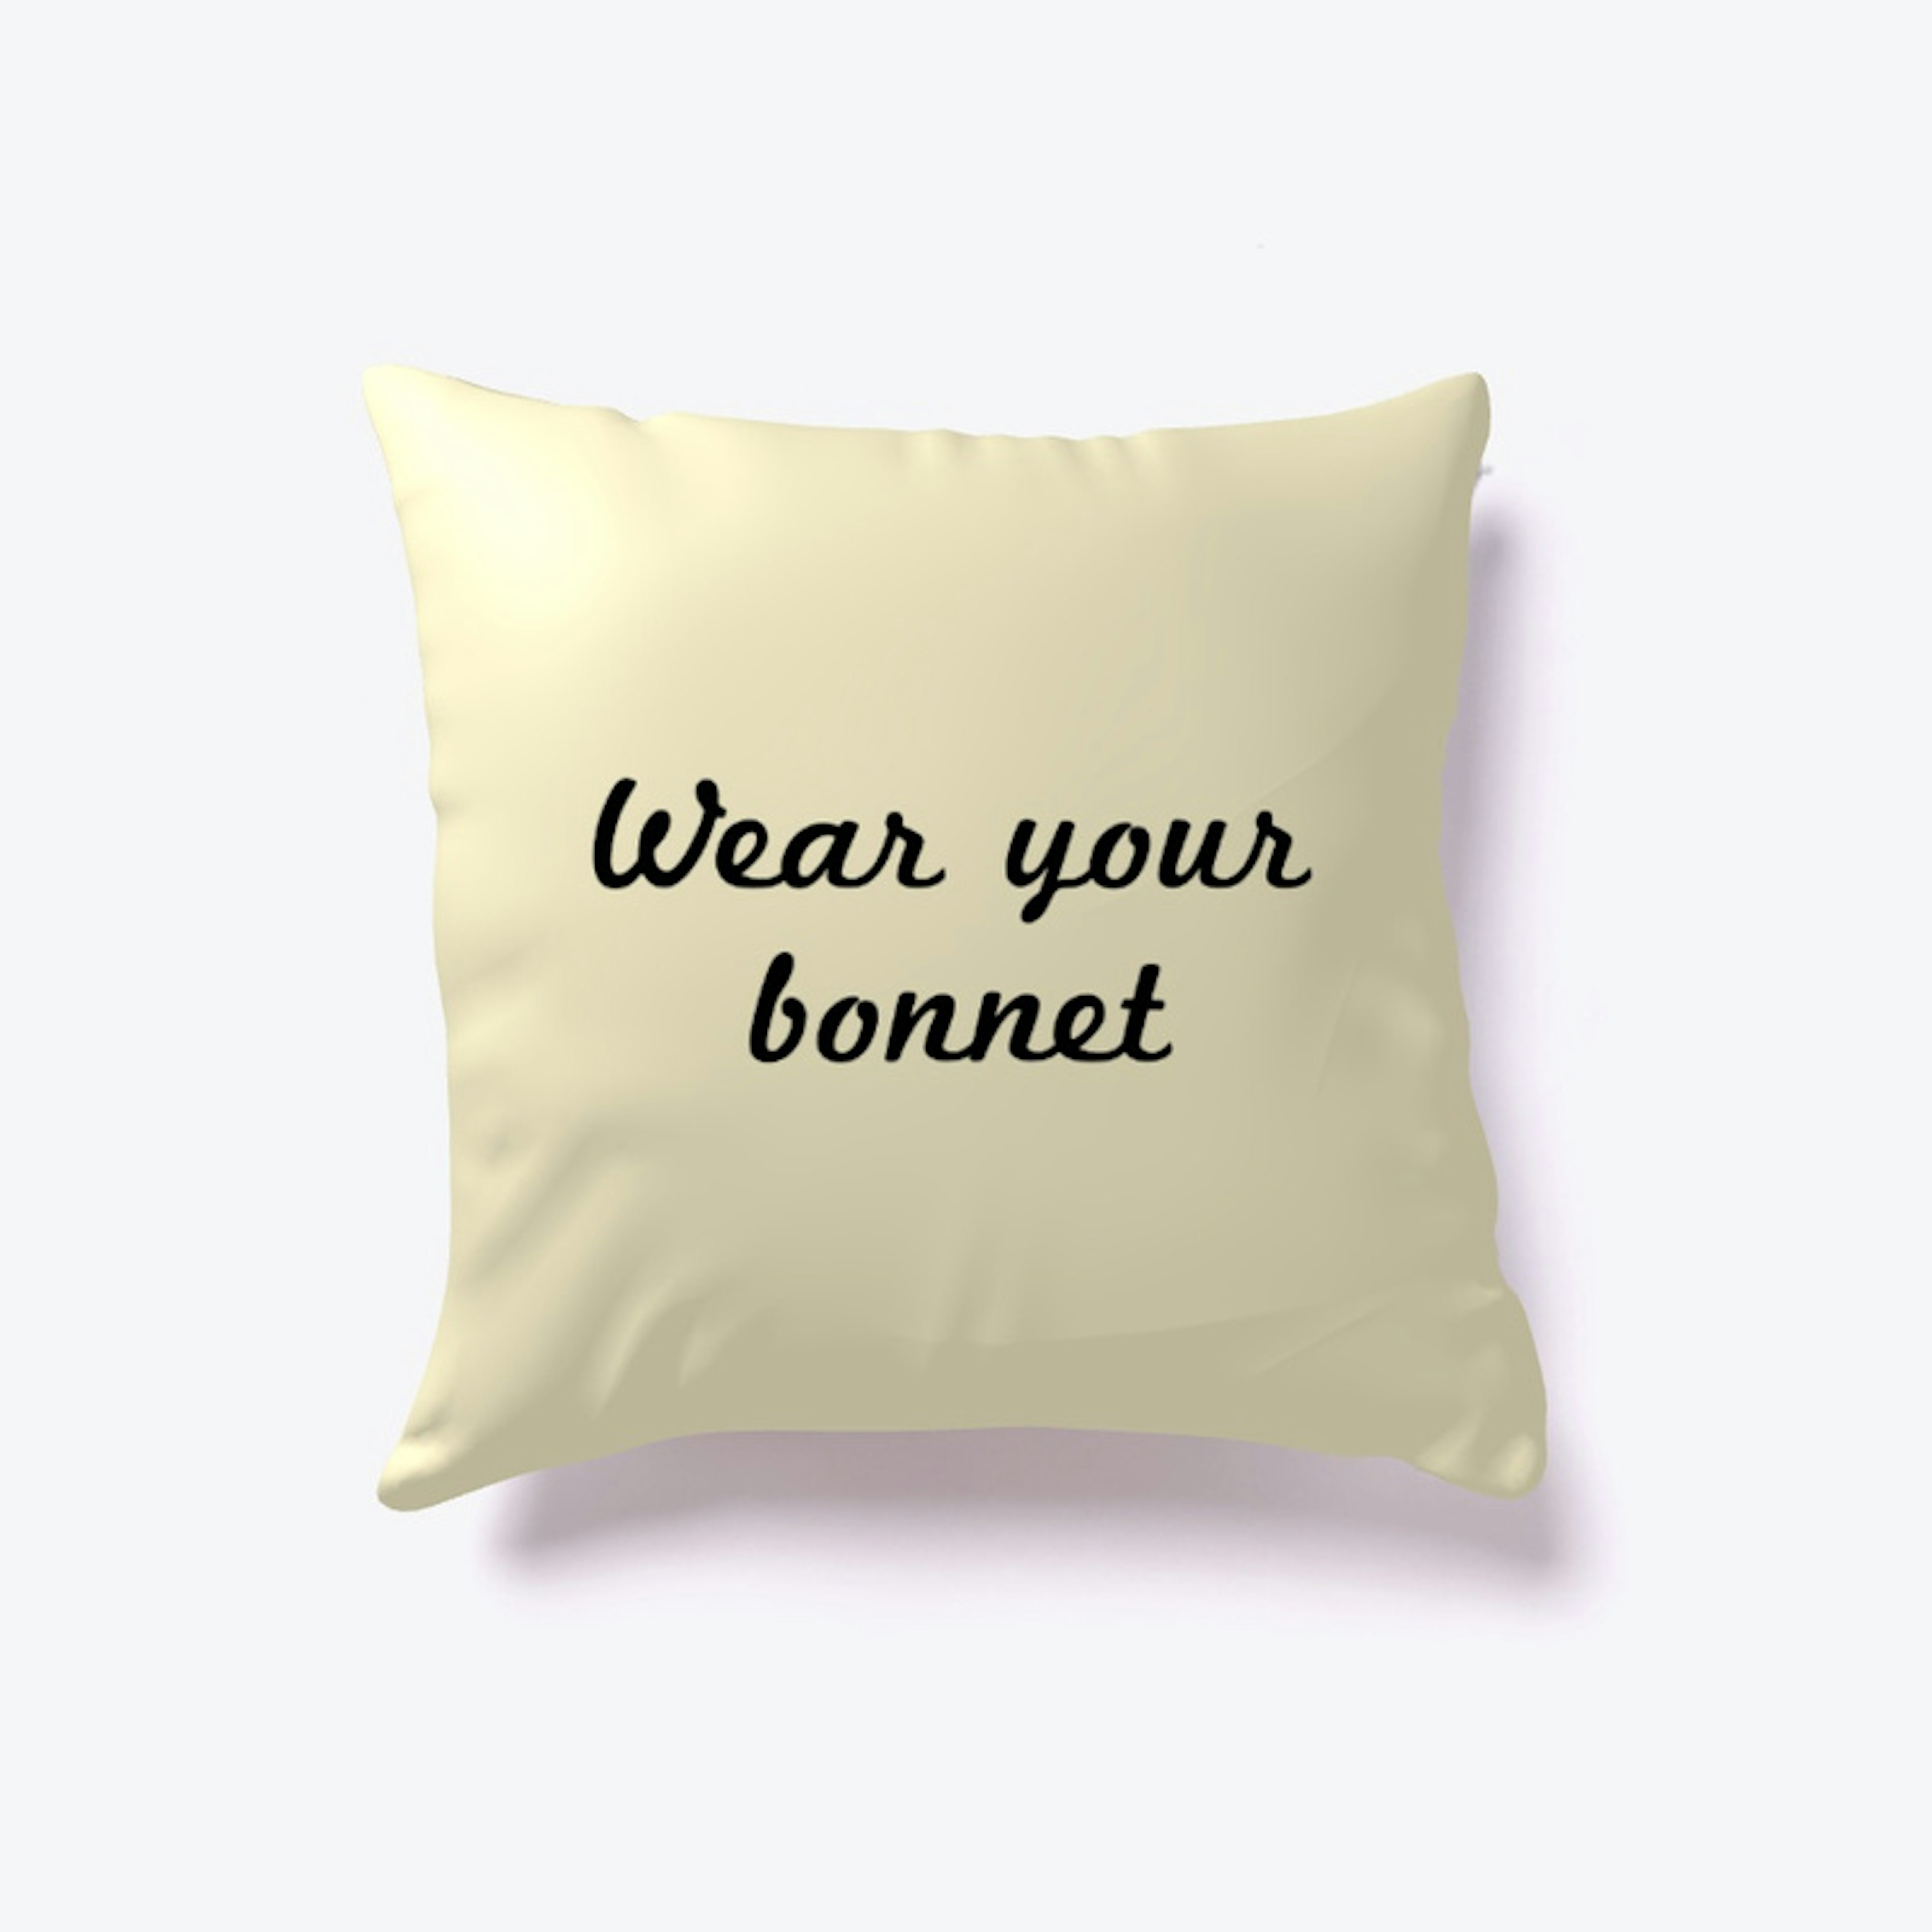 Wear Your Bonnet Throw Pillow